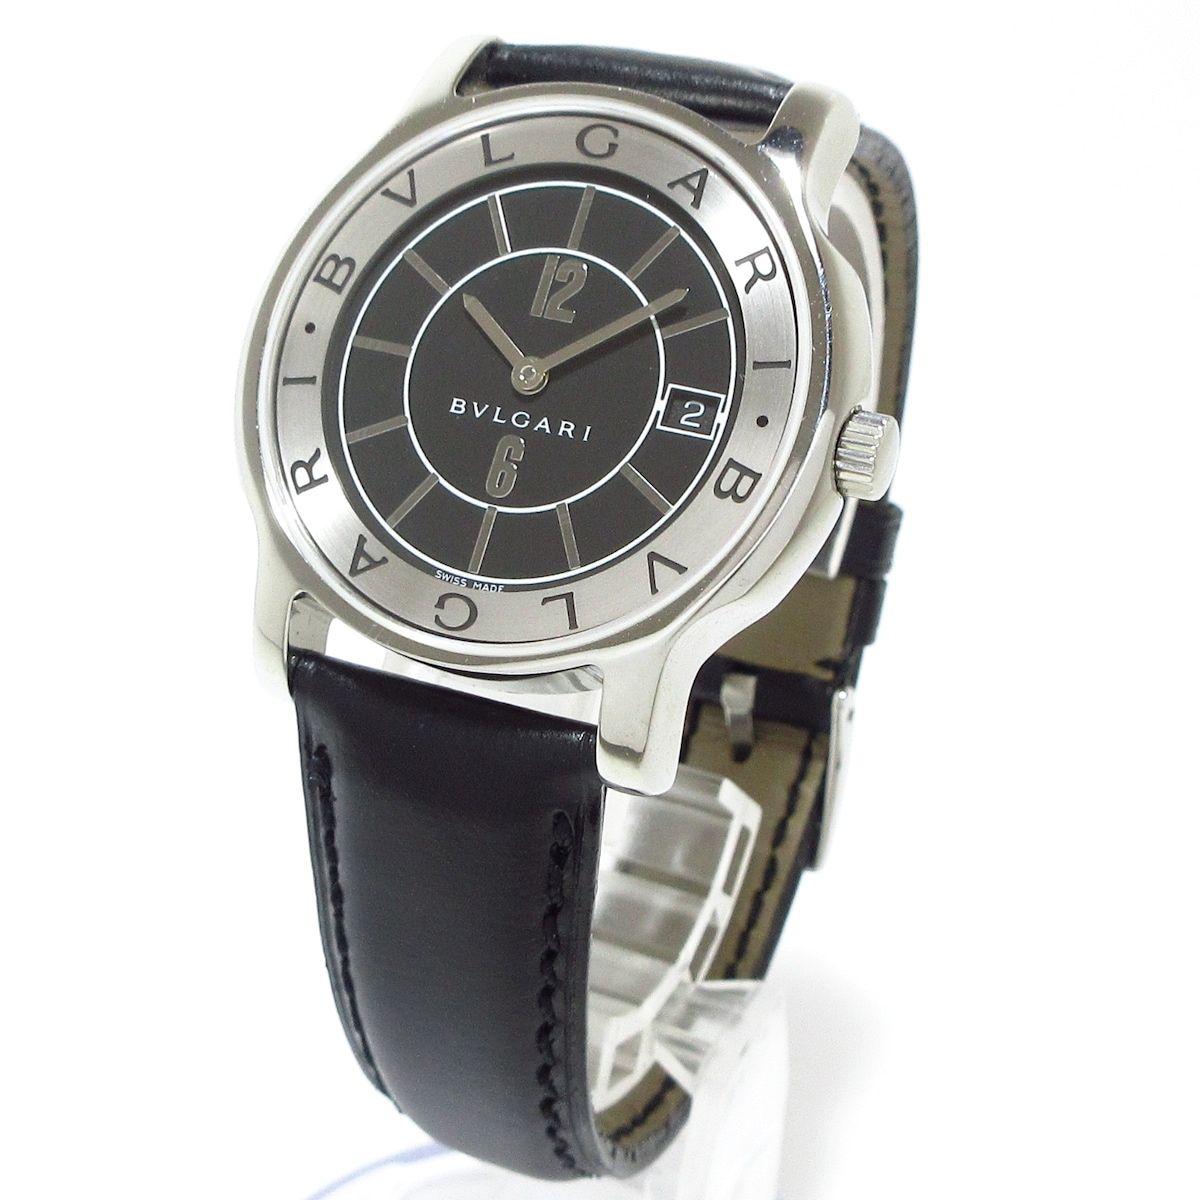 BVLGARI(ブルガリ) 腕時計 ソロテンポ ST35S メンズ 革ベルト 黒×シルバー